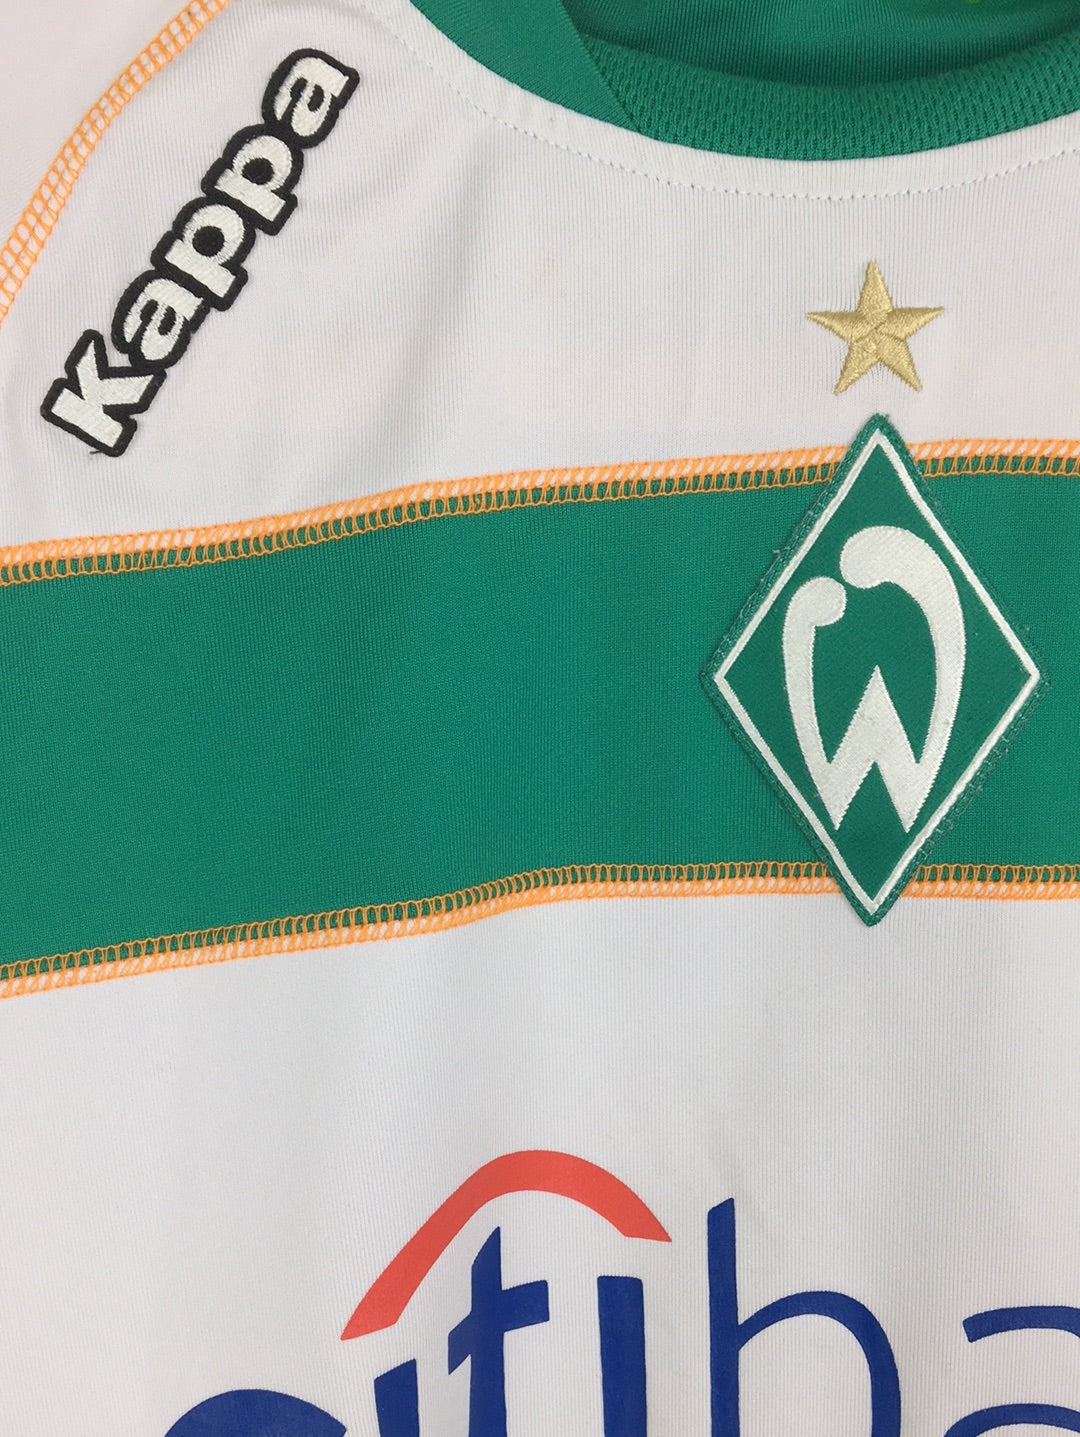 Kappa Werder Bremen jersey (XS)